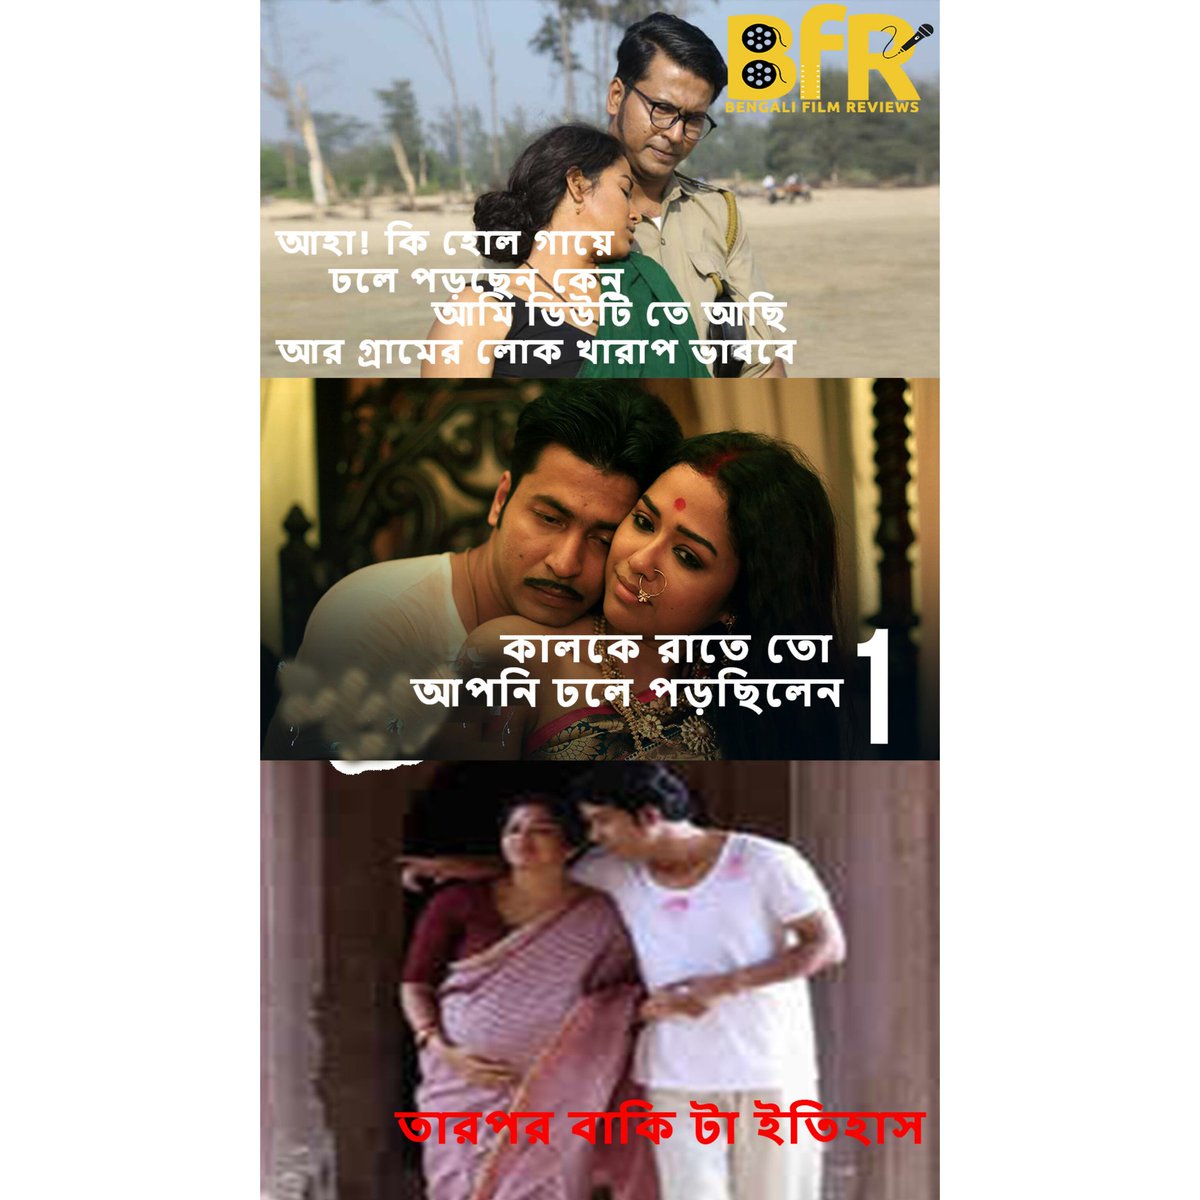 বাকিটা সত্যিই ইতিহাস হয়ে গেছে🤣🤣
.
.
.
#anirbanchakraborty #sohinisarkar #byomkeshodurgorahashya #bfrmemes #bfr #bengalifilmreviews #comedy #fun #entertainment #bengalimovies #memecontent